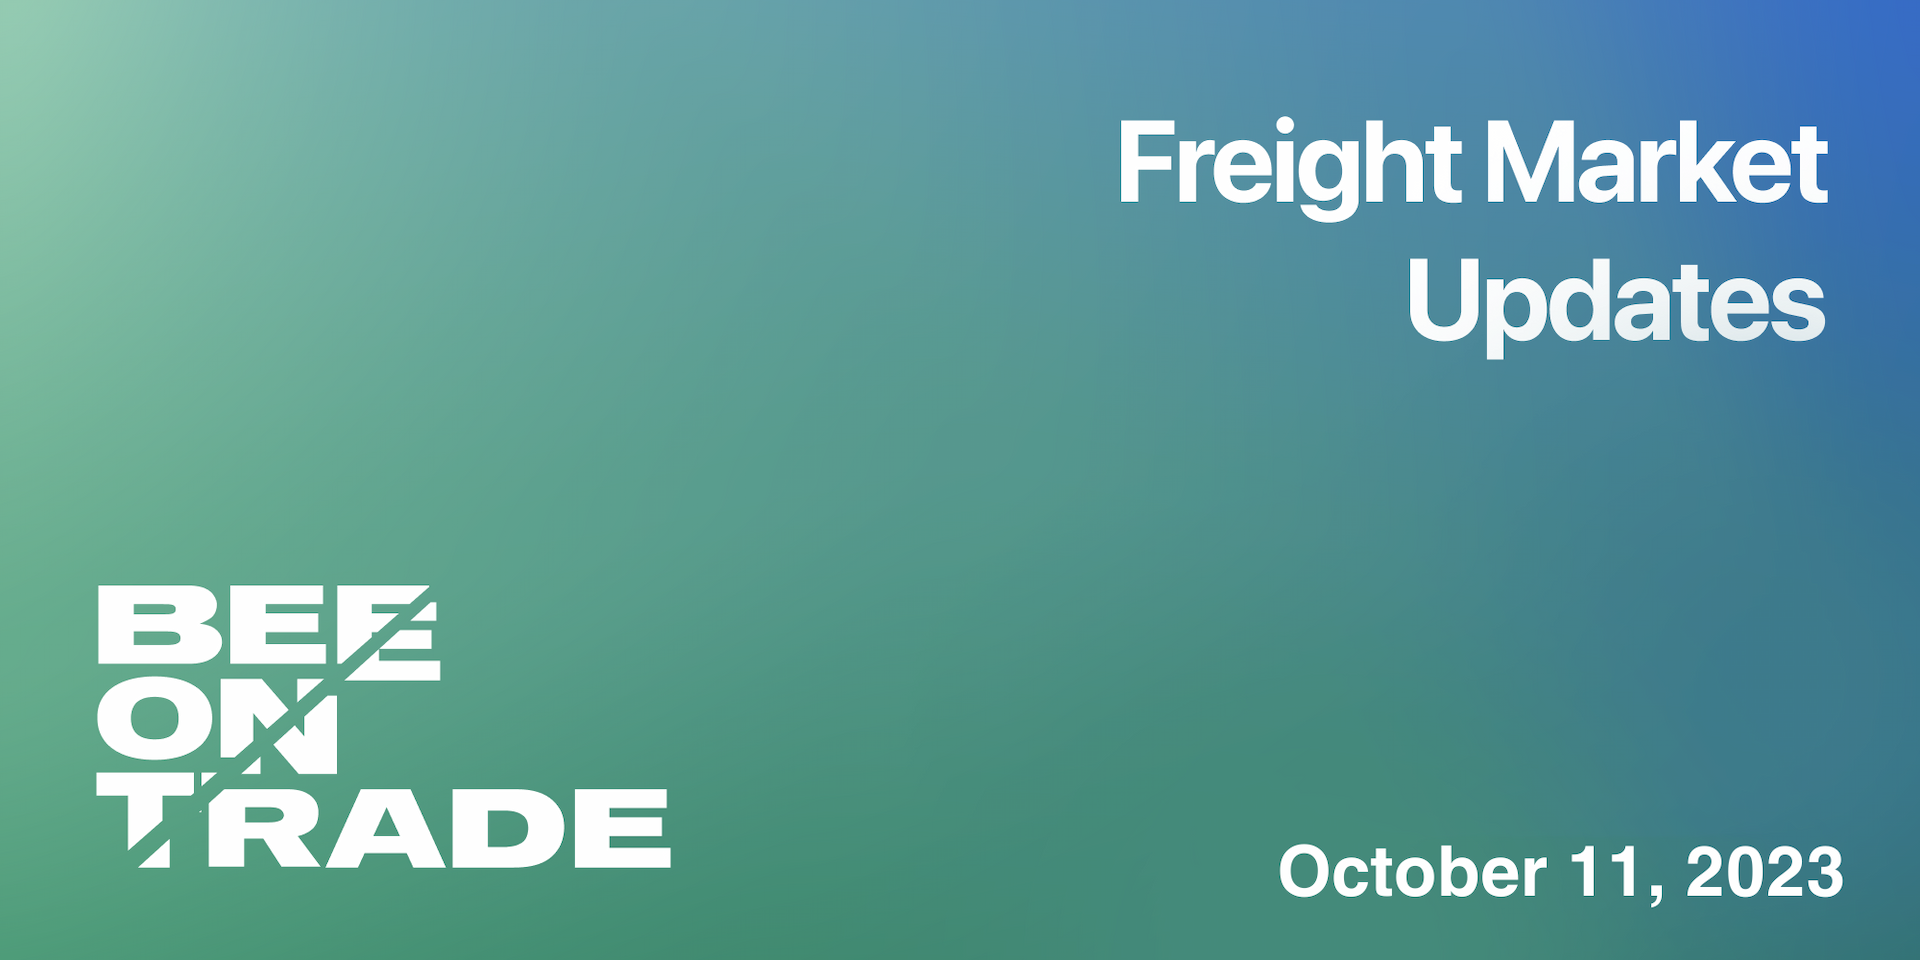 Freight market update - 11 October 2023